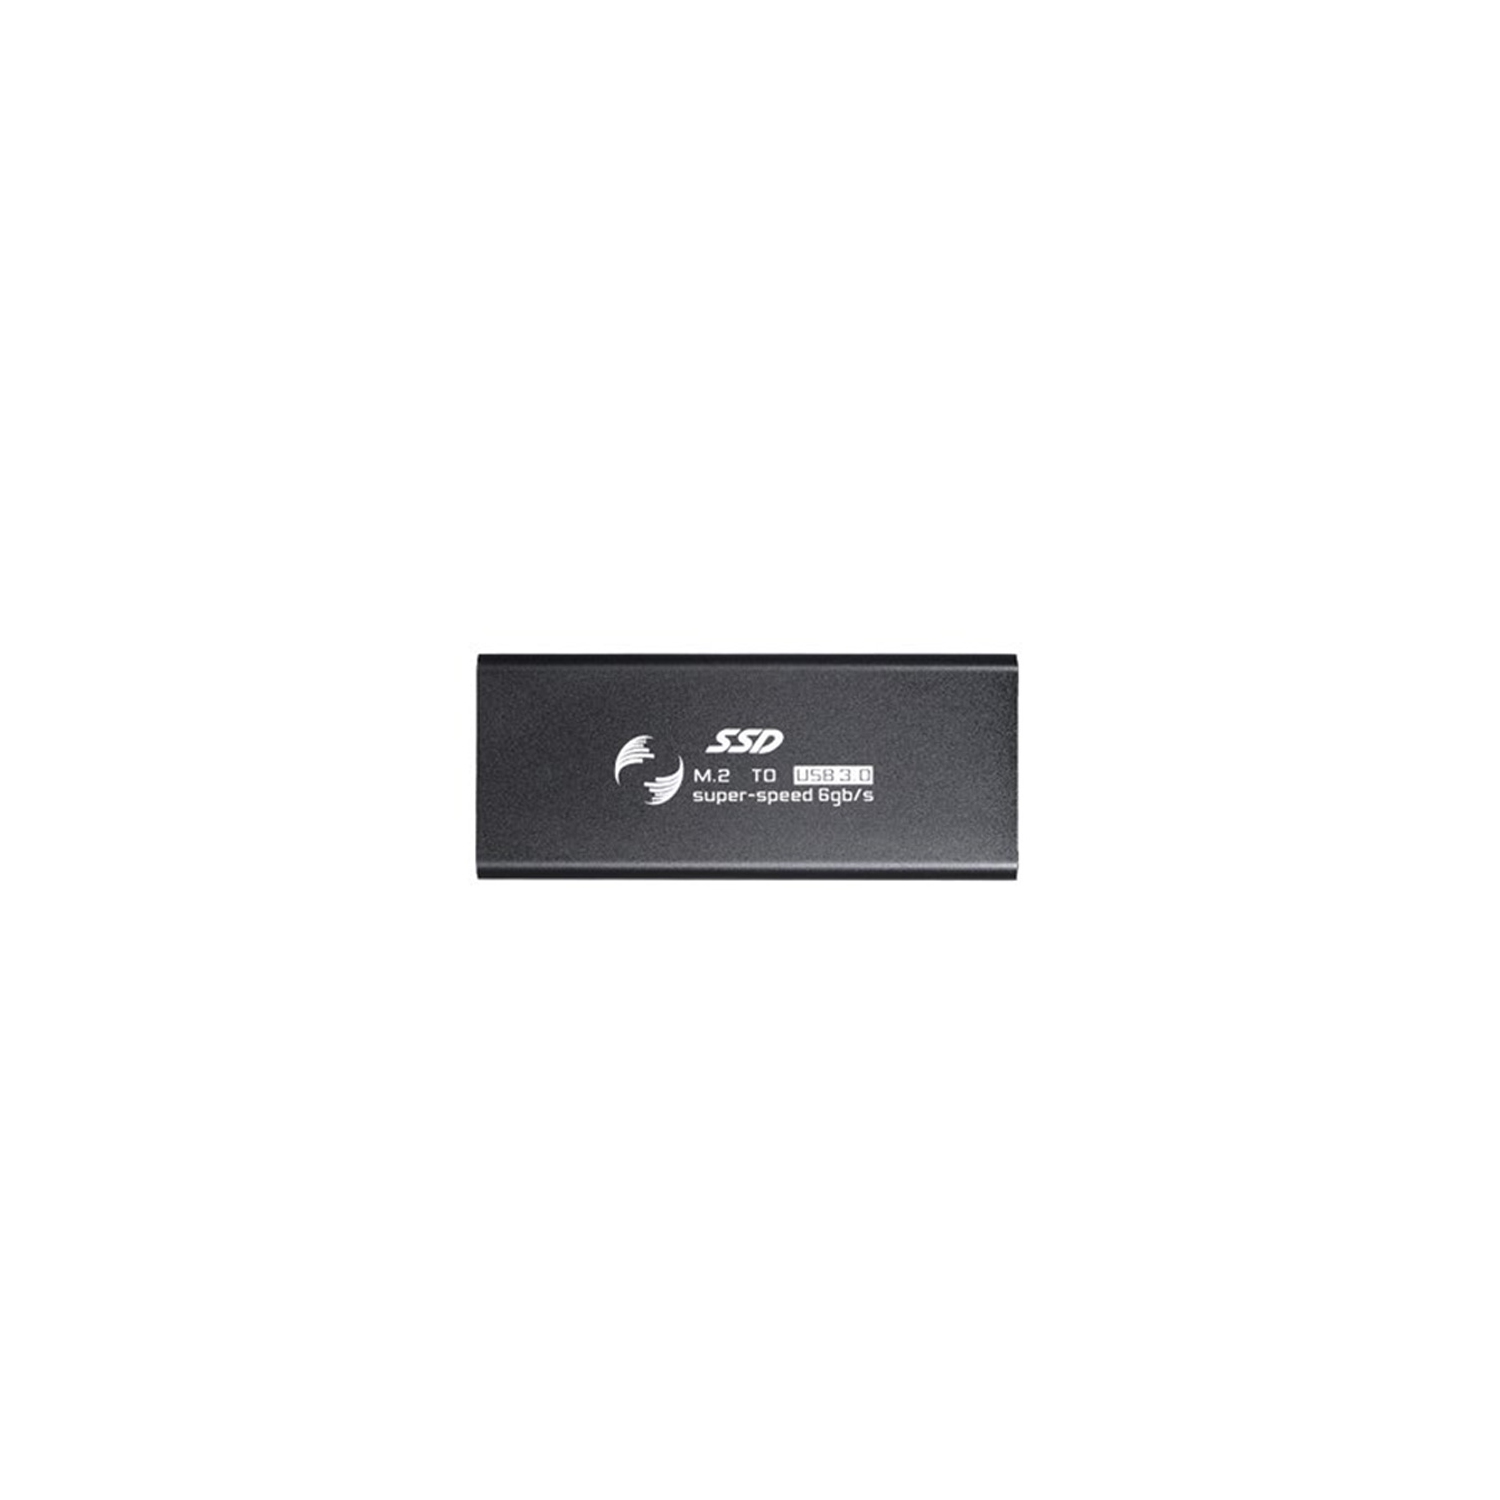 M.2 SATA SSD To USB 3.0 External SSD Enclosure NGFF 2280 2260 2242 2230 Key B/Key B+M